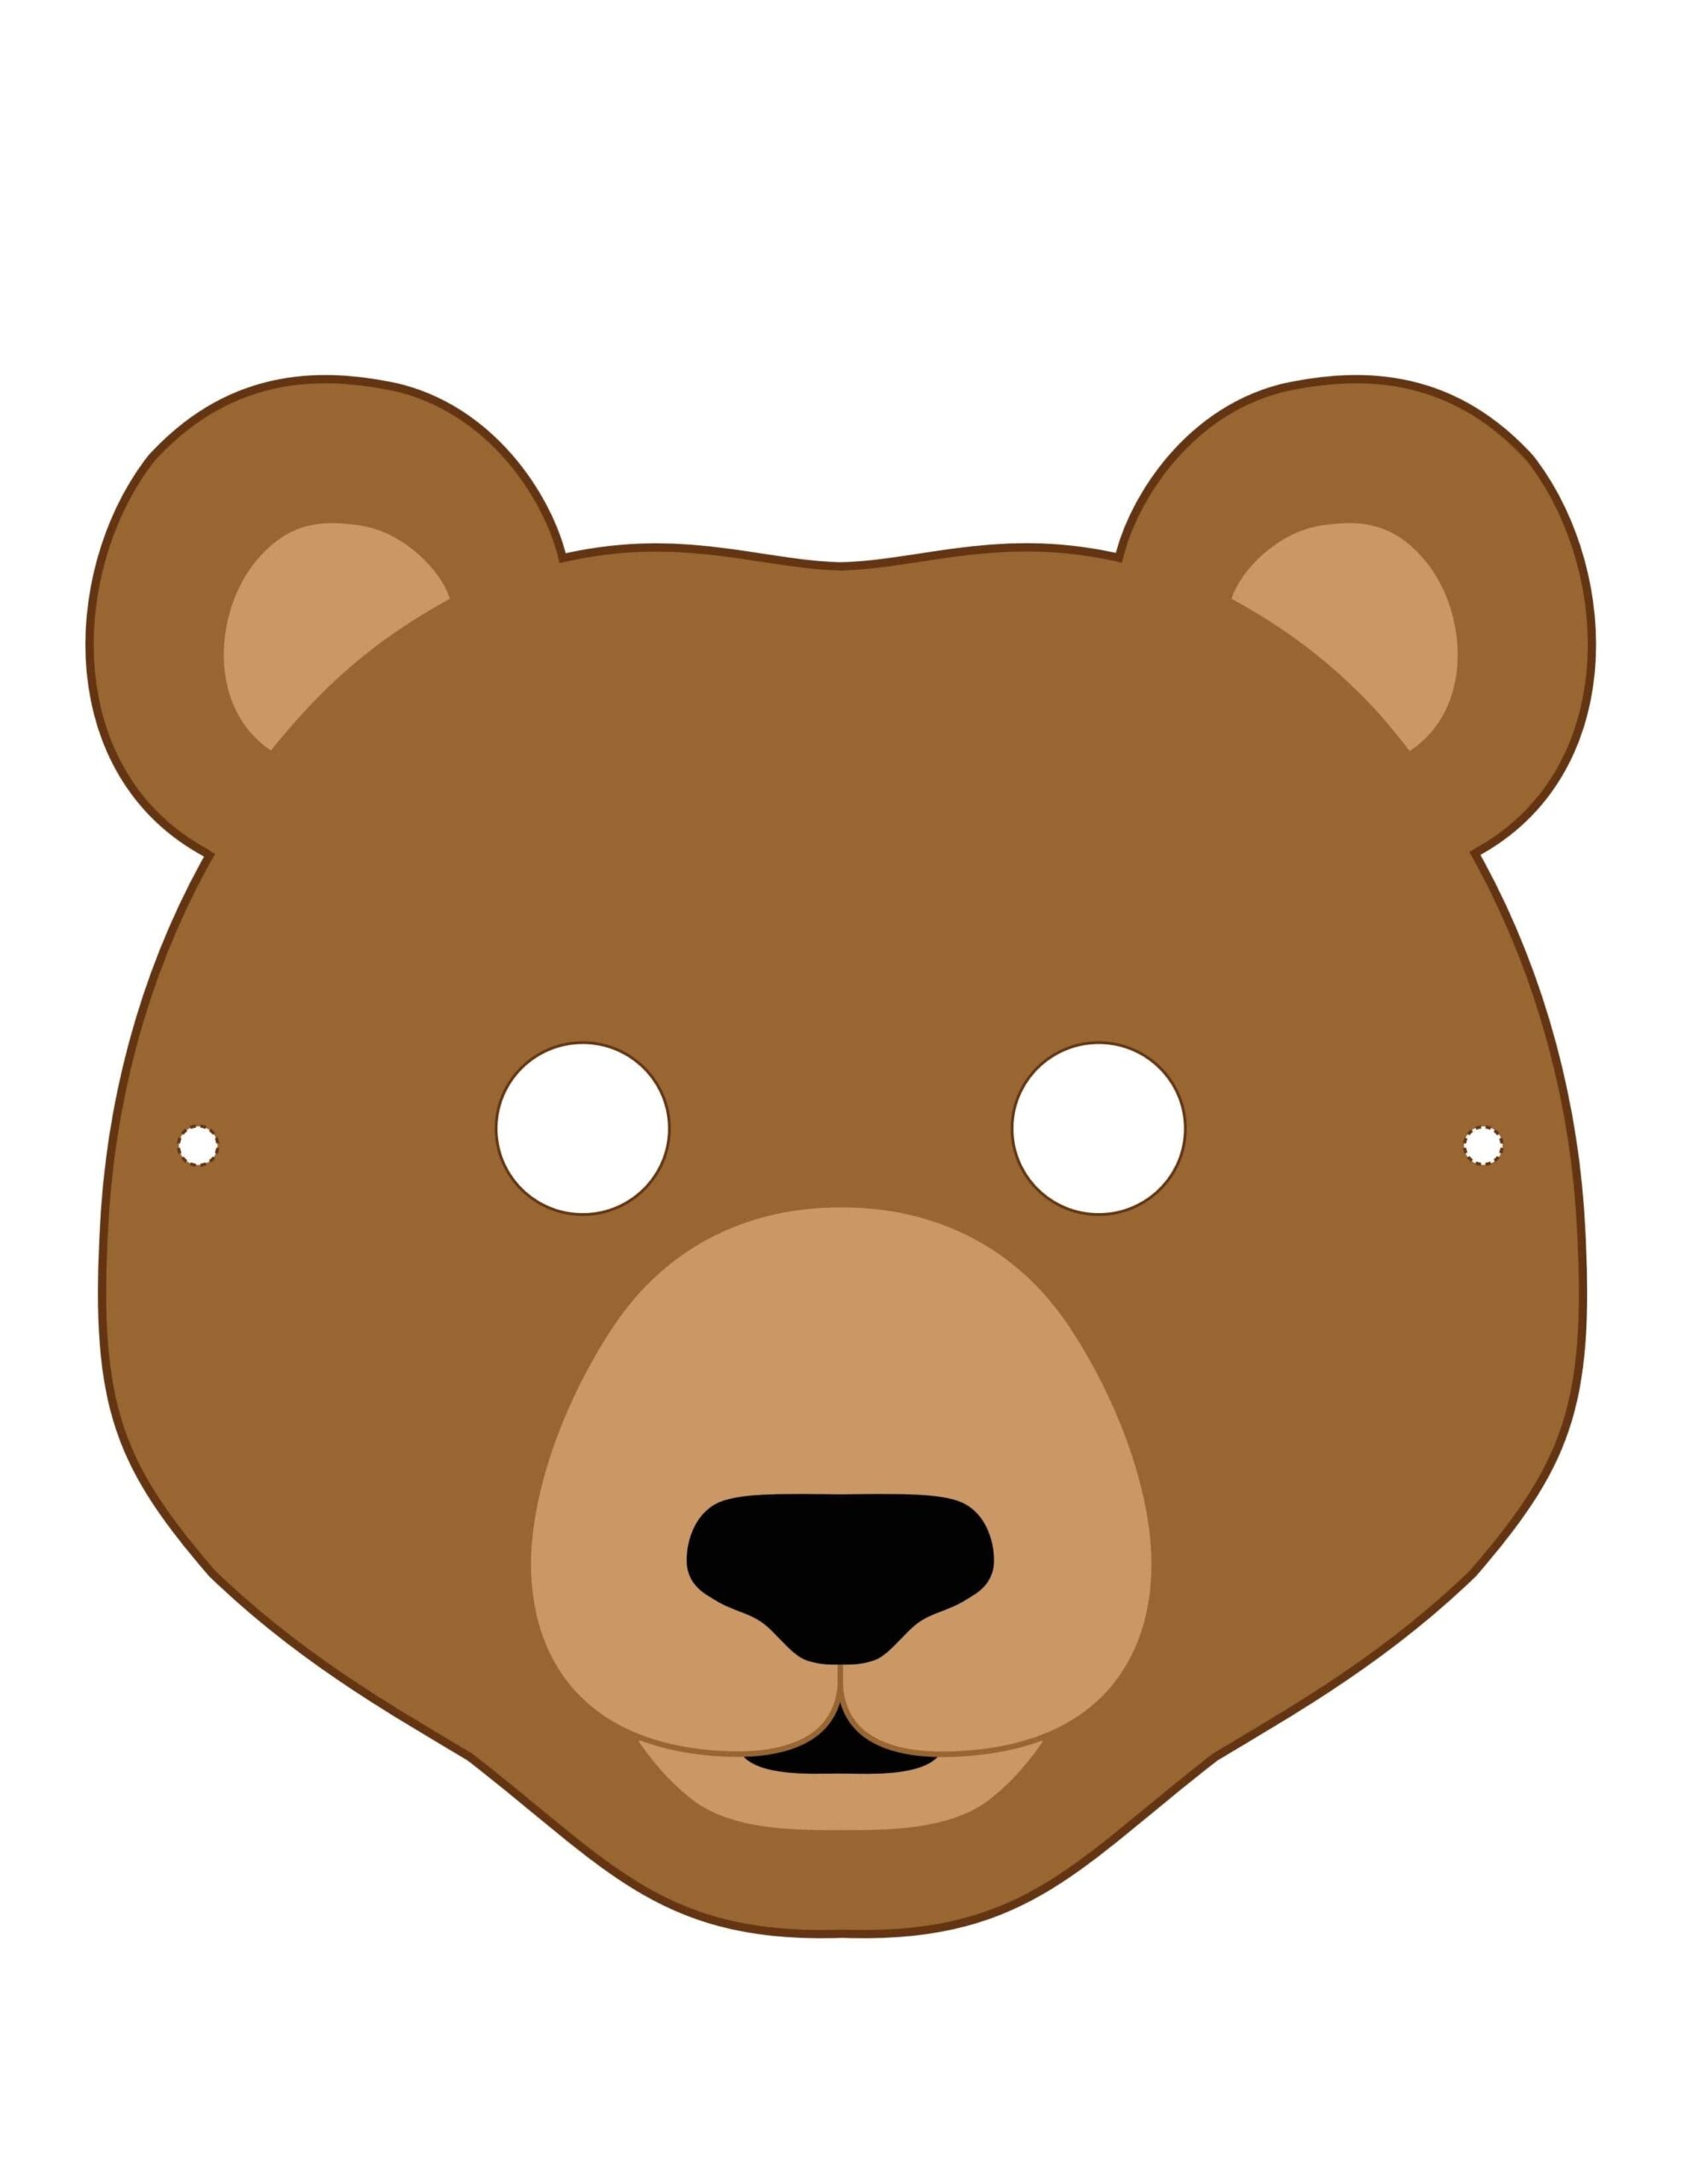 Голова медведя рисунок: изображения без лицензионных платежей